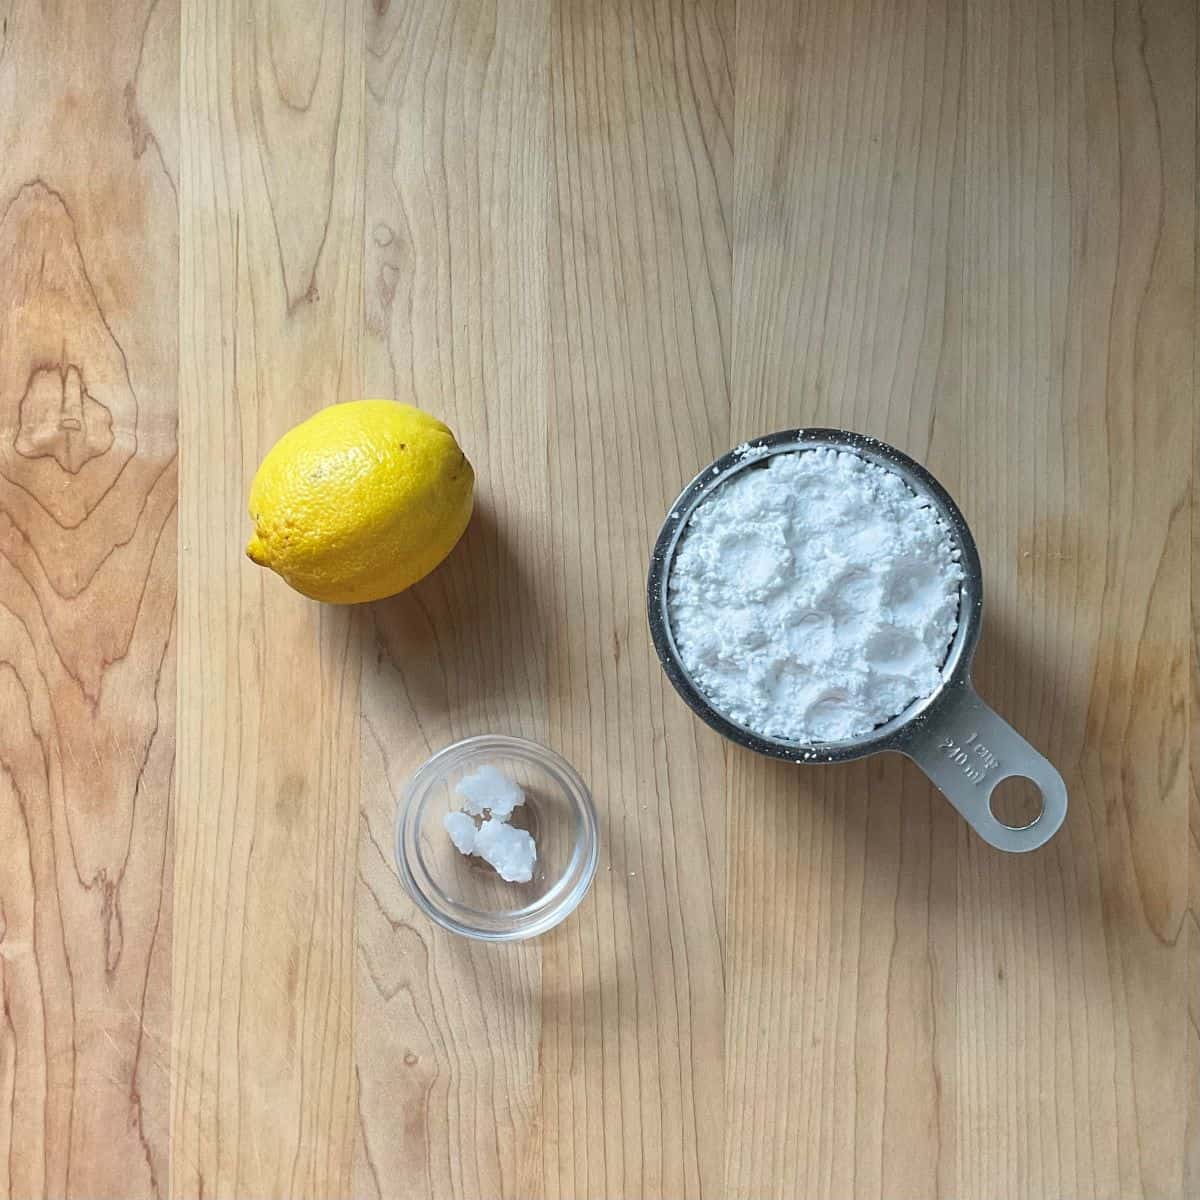 Ingredients to make lemon glaze icing.